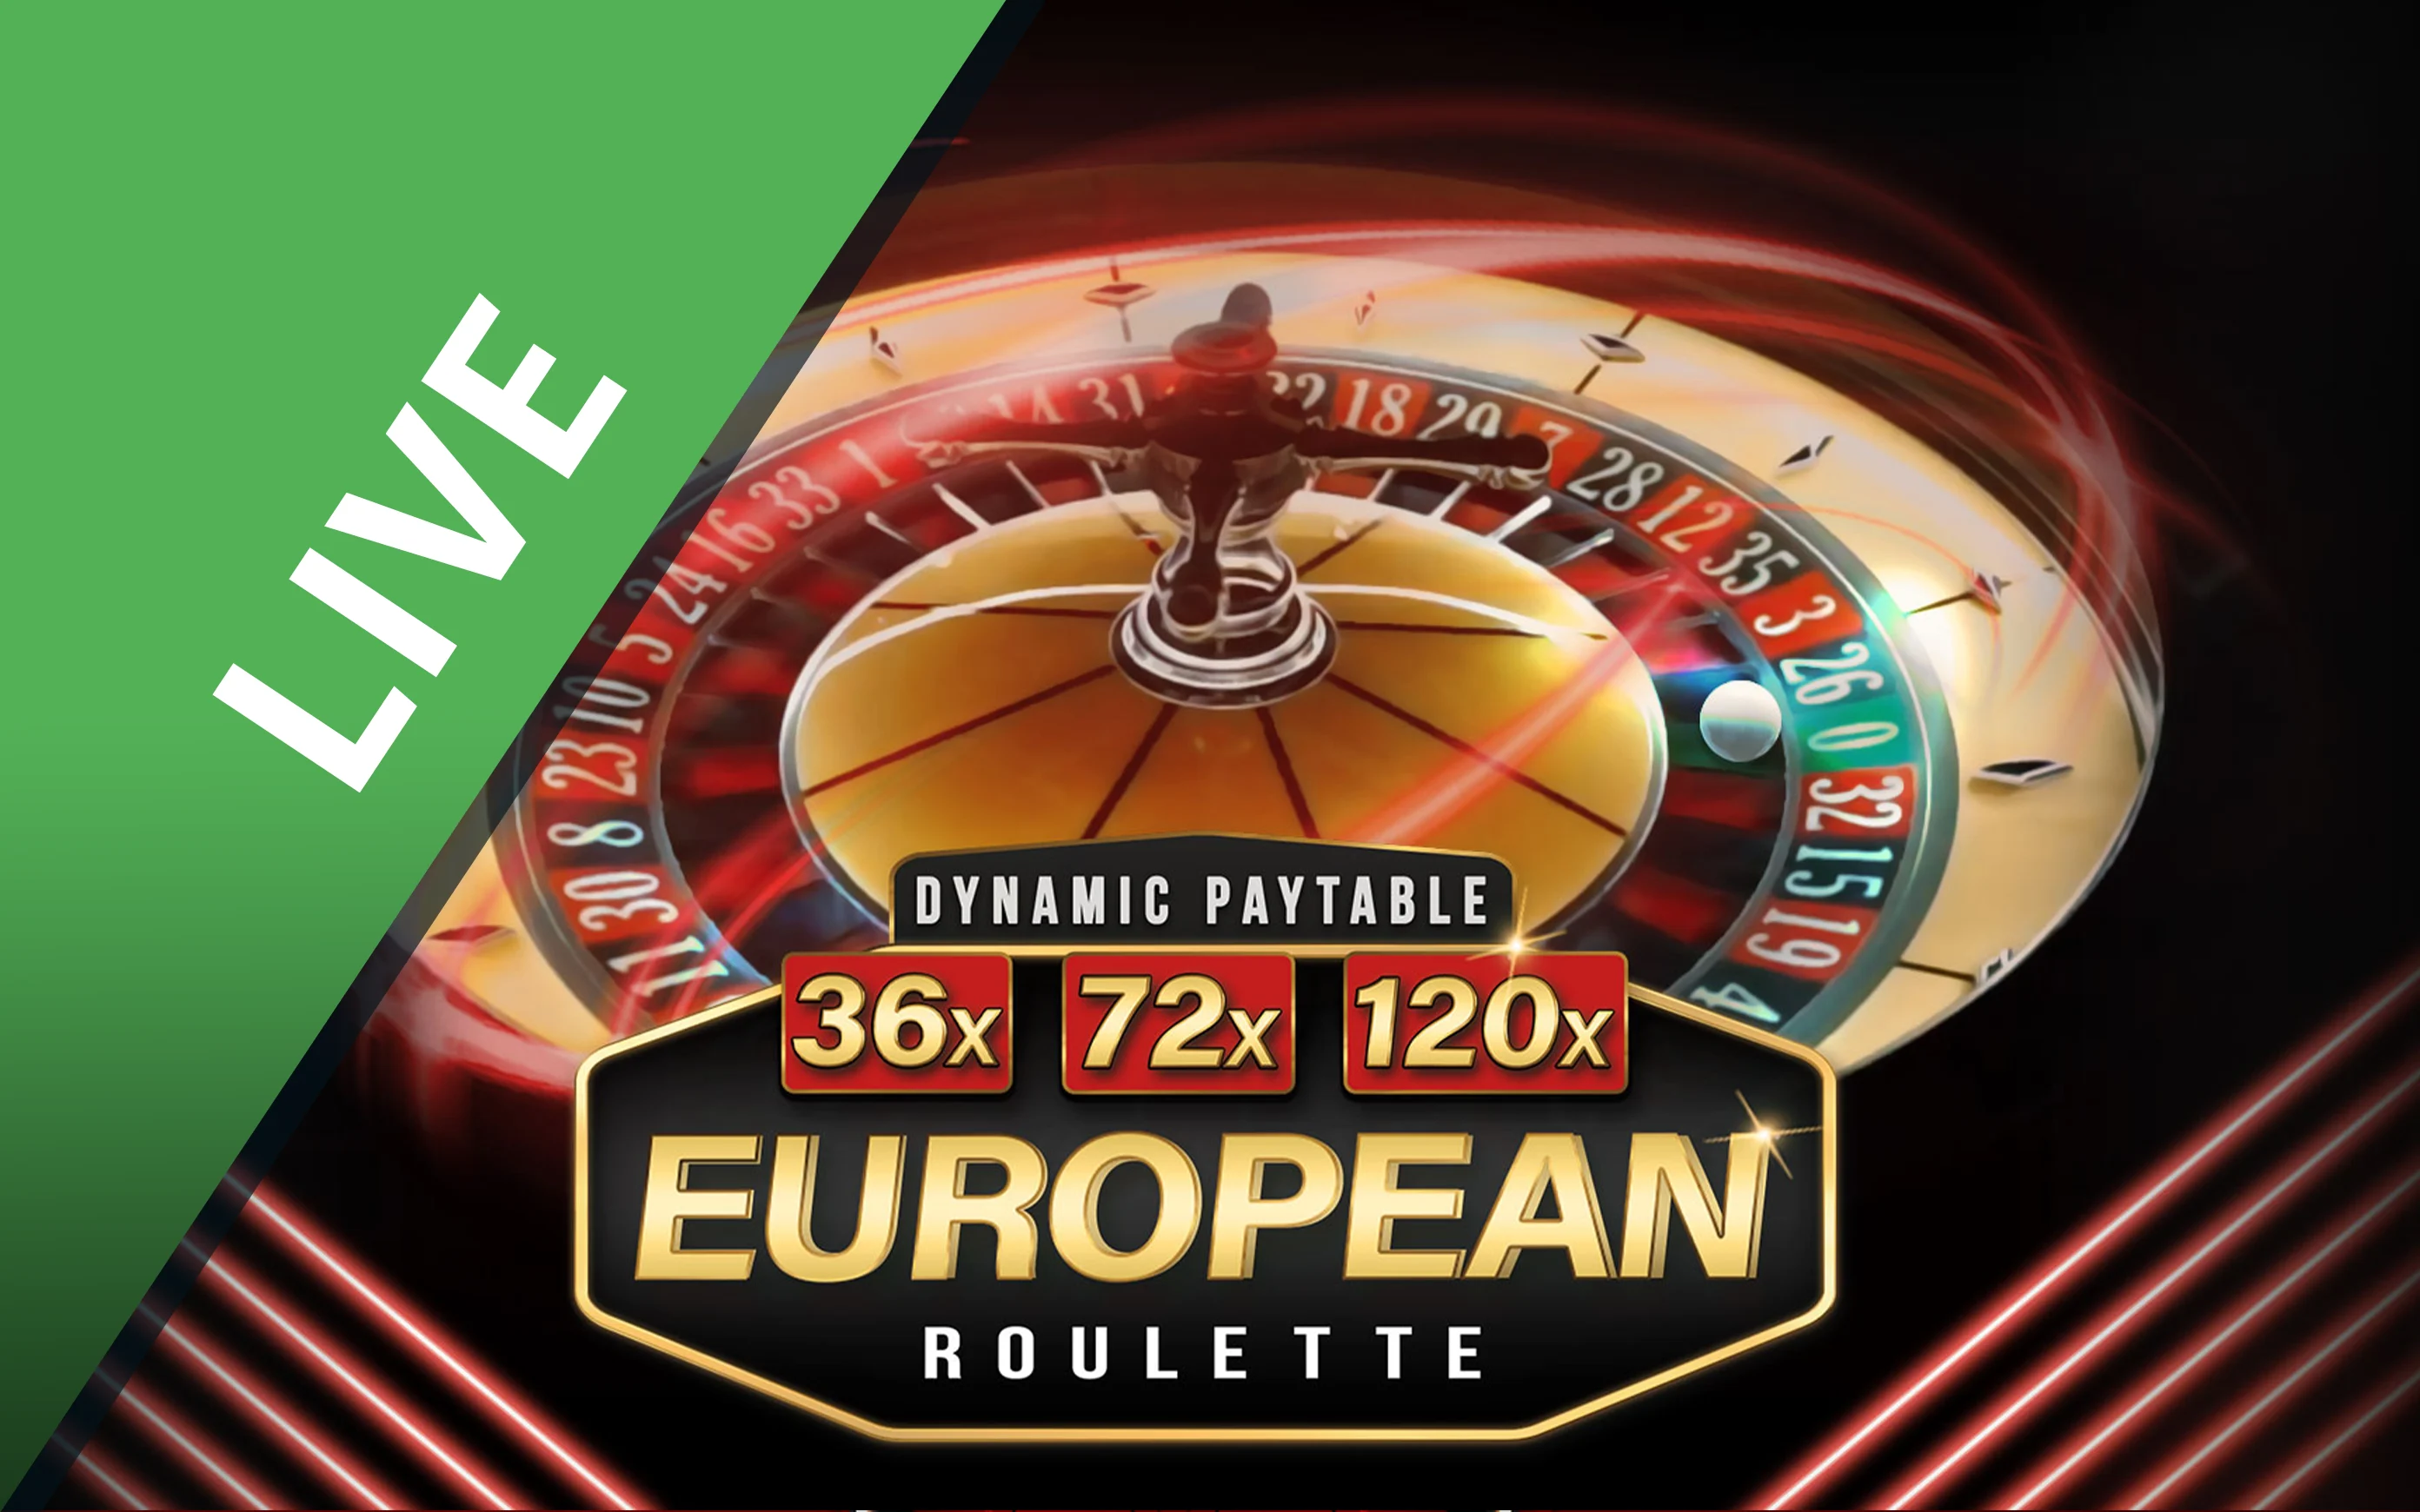 Juega a Dynamic European Roulette en el casino en línea de Starcasino.be